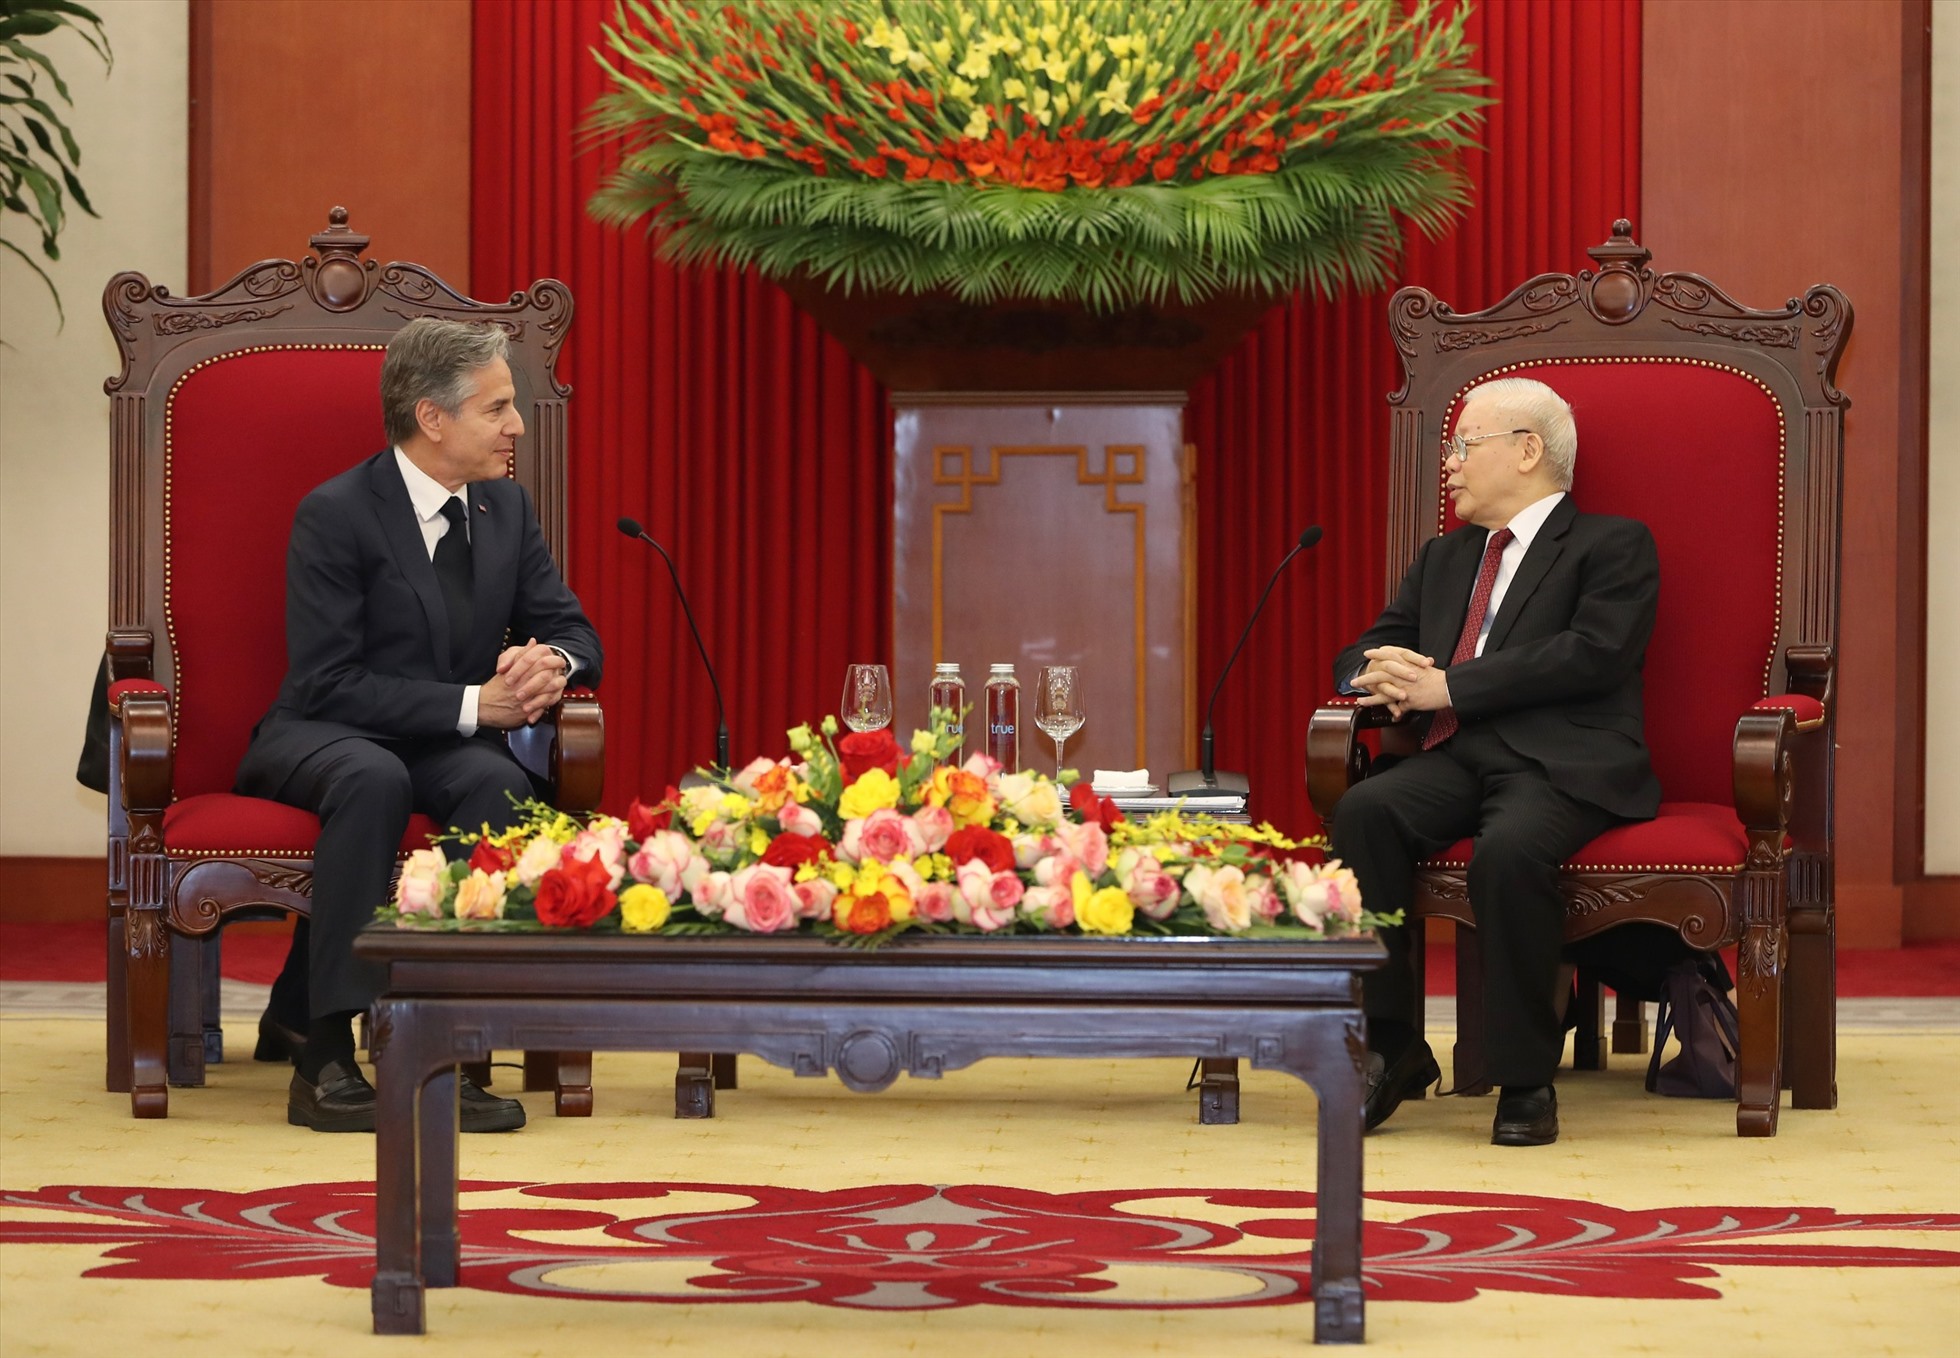 Tổng Bí thư Nguyễn Phú Trọng và Tổng thống Mỹ Joe Biden cũng đề nghị giao các cơ quan chức năng của hai bên trao đổi các nội hàm cụ thể nhằm tiếp tục thúc đẩy quan hệ trong thời gian tới. Ảnh: Hải Nguyễn